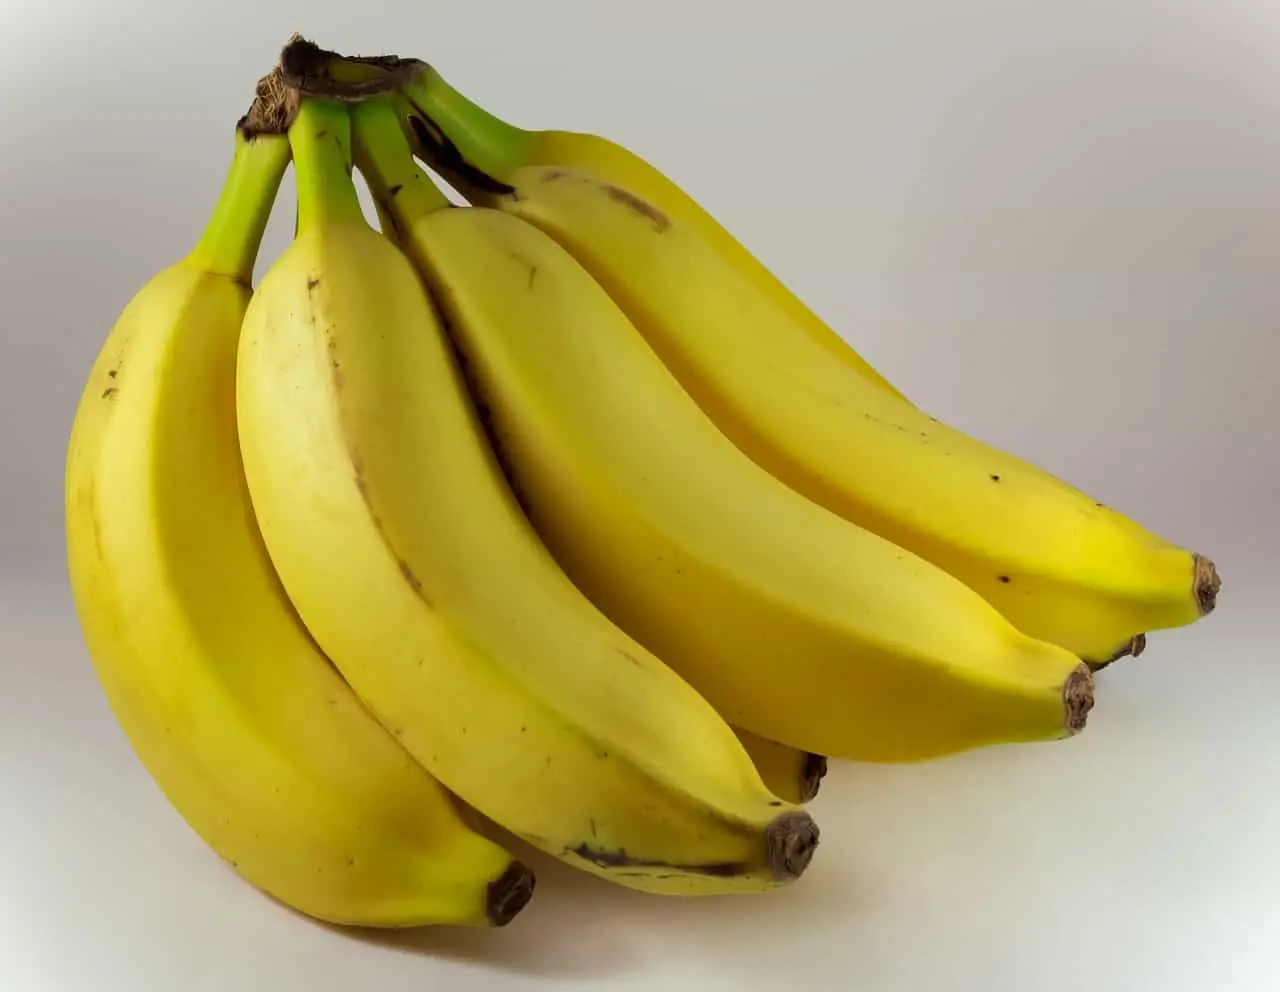 Eating 2 Bananas a Day Benefits